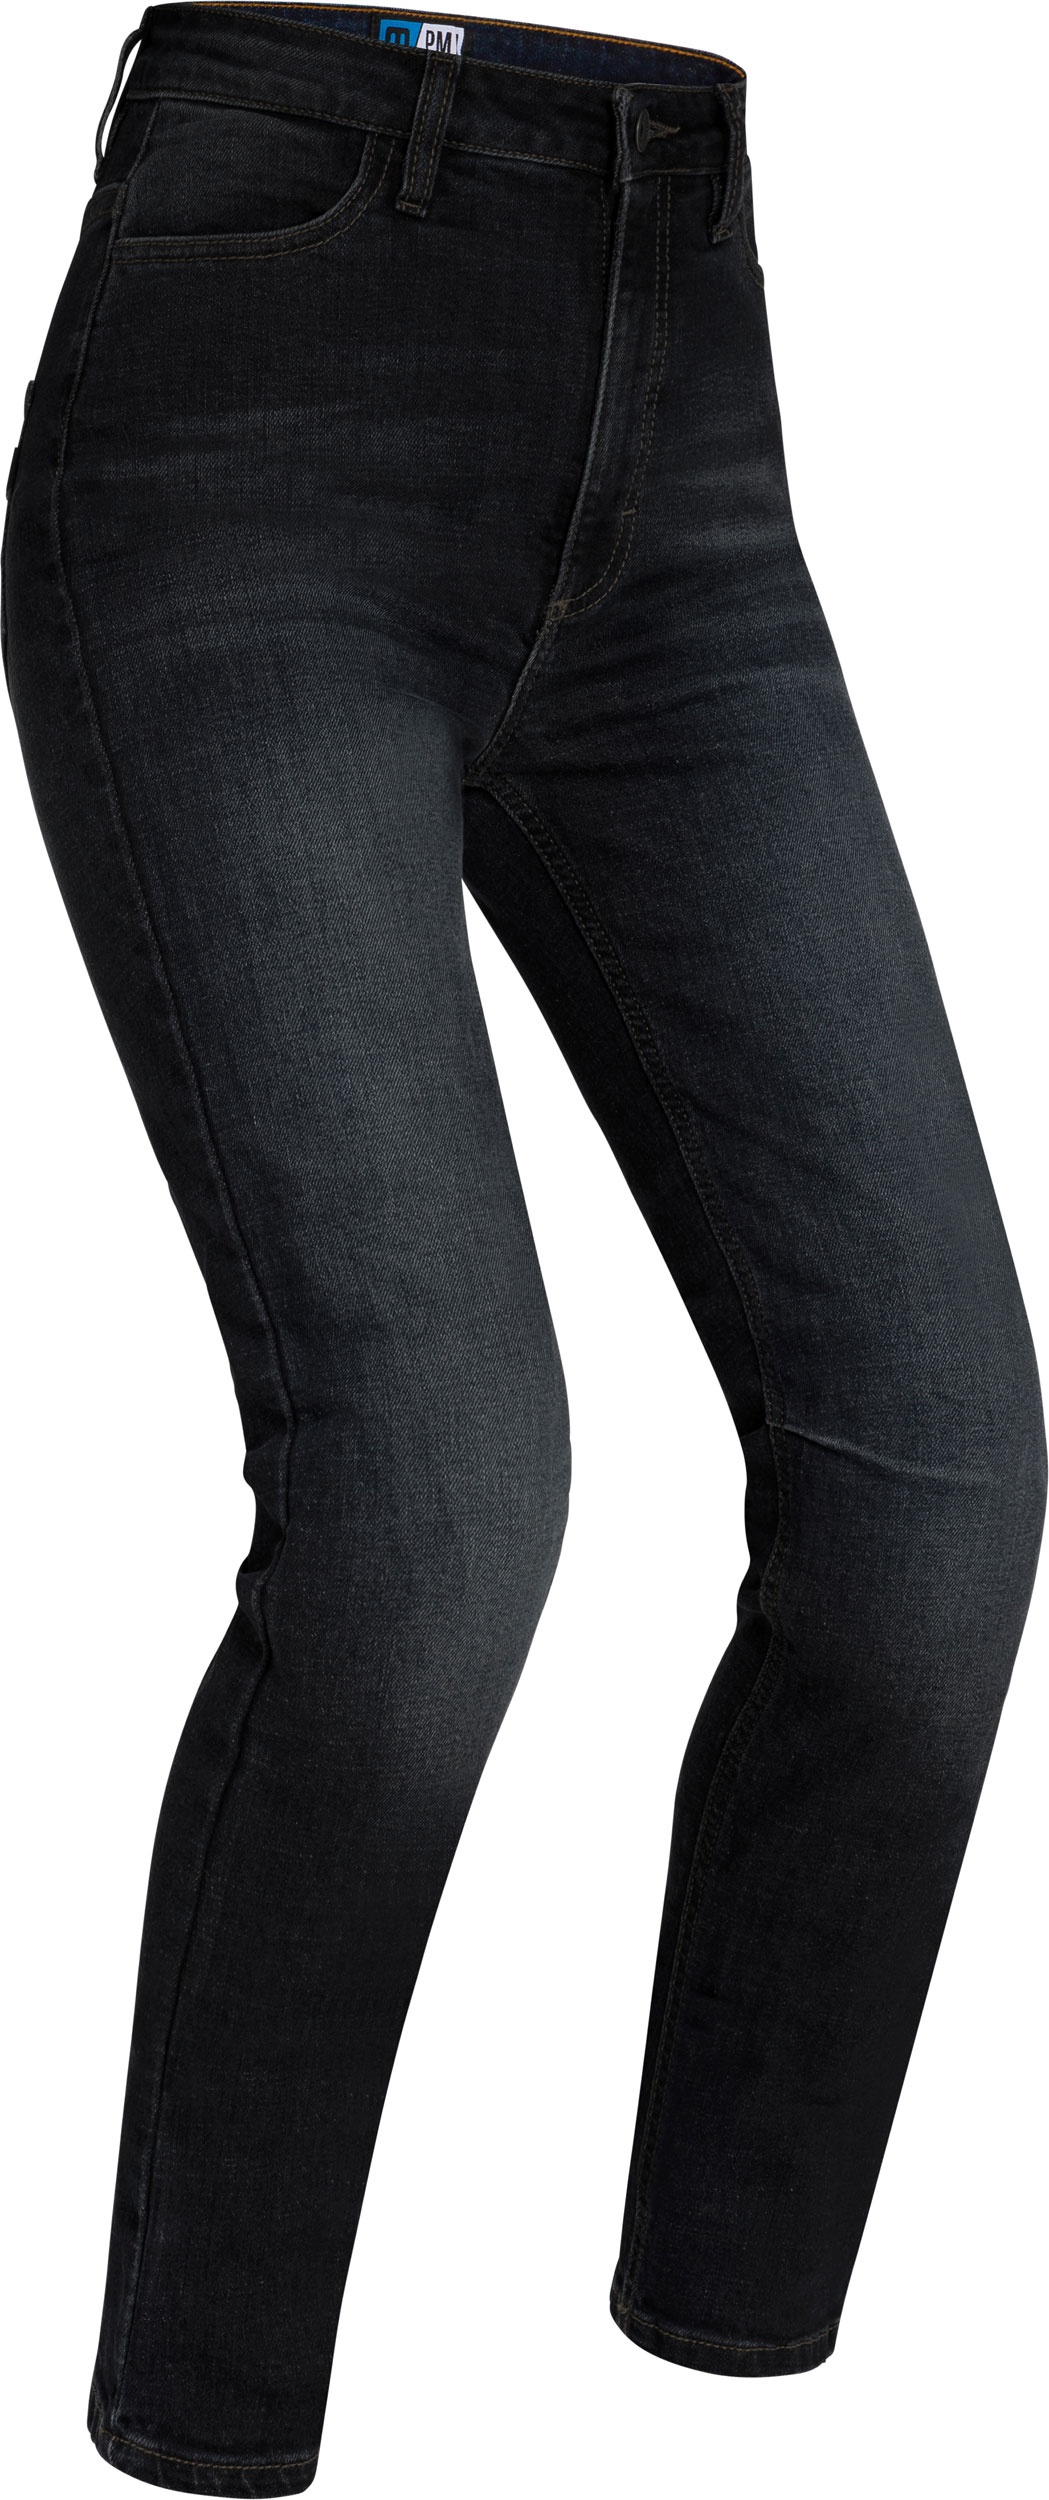 PMJ Sara, jeans femmes - Noir - 25